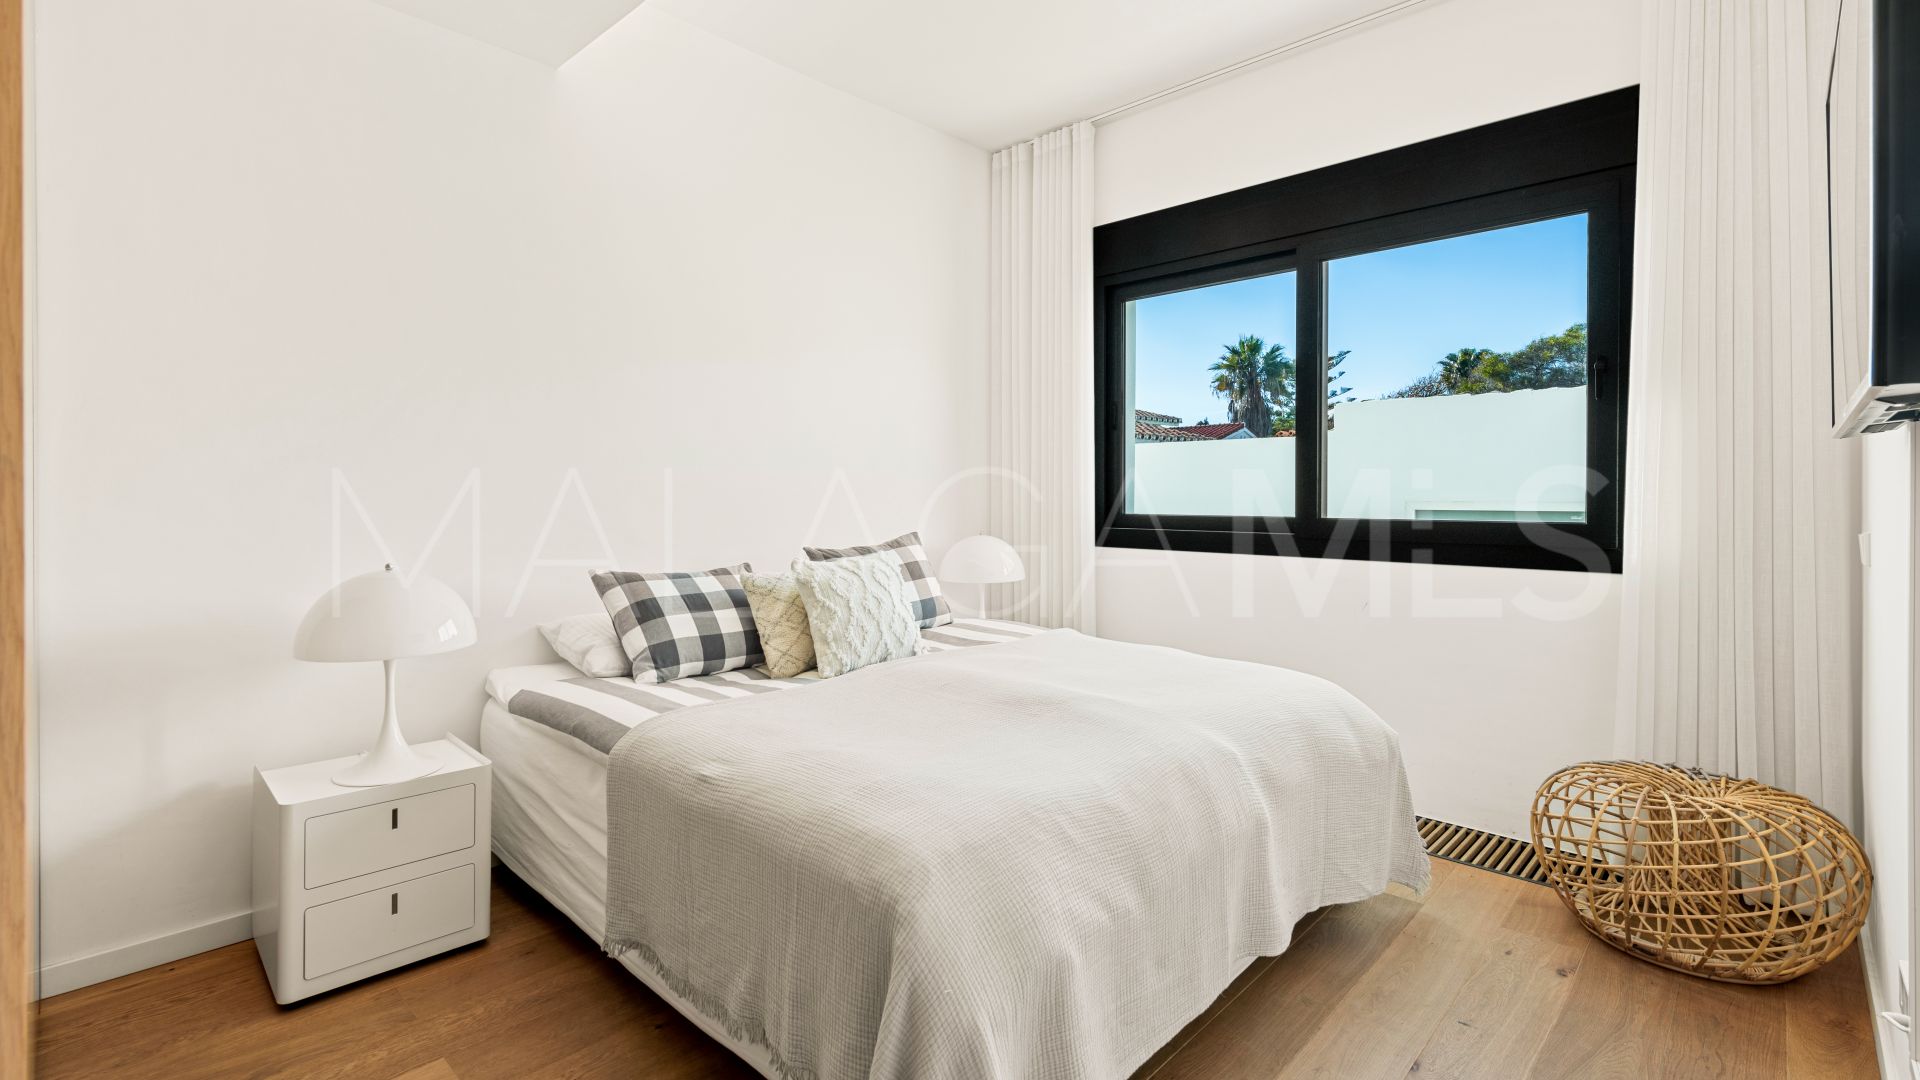 6 bedrooms Costabella villa for sale